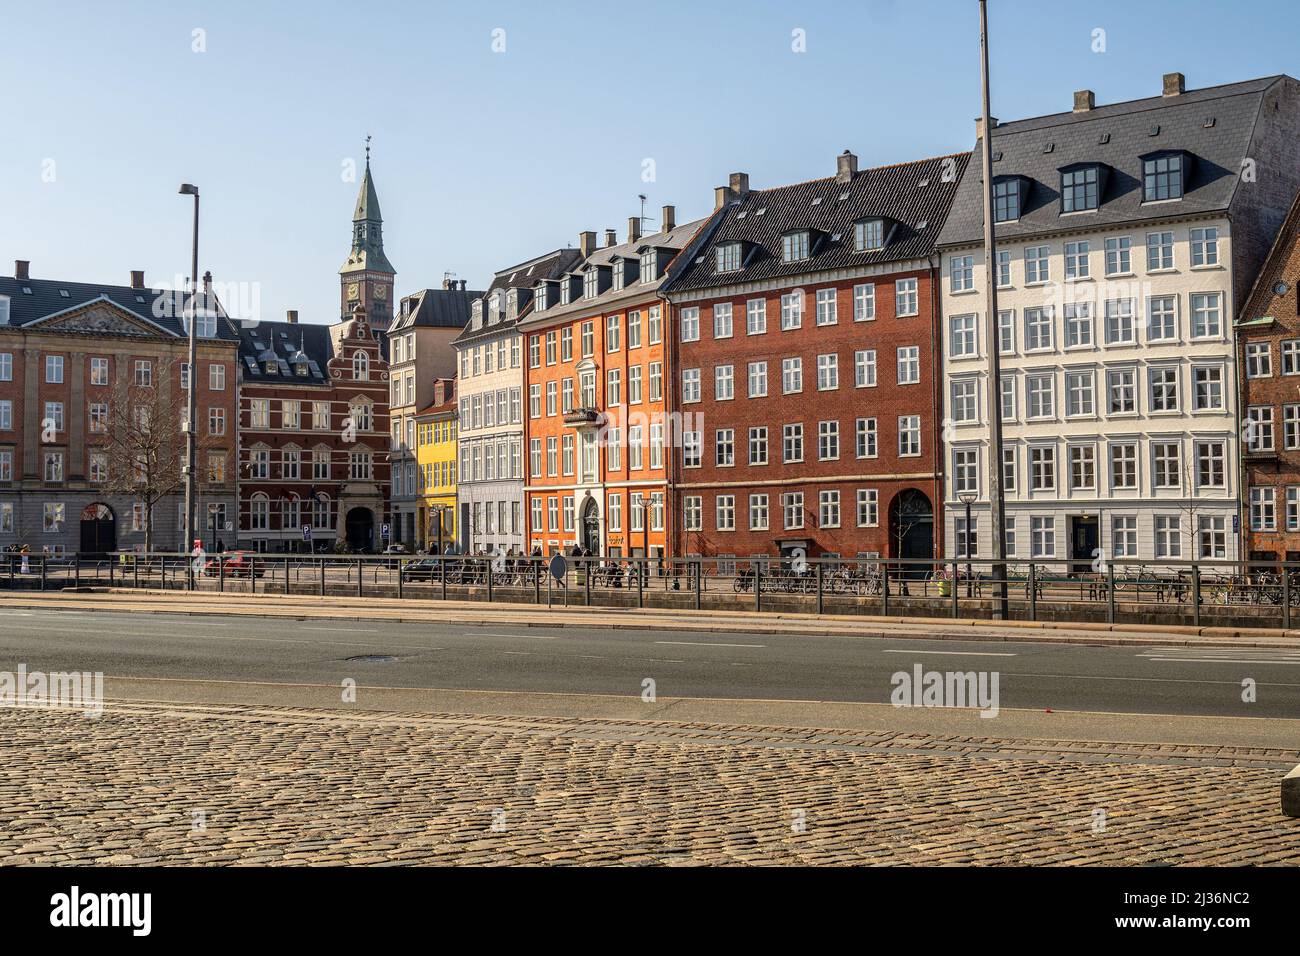 Der Glockenturm des Rathauses ragt unter den bunten Fassaden der typischen Gebäude der Altstadt von Kopenhagen hervor. Stockfoto